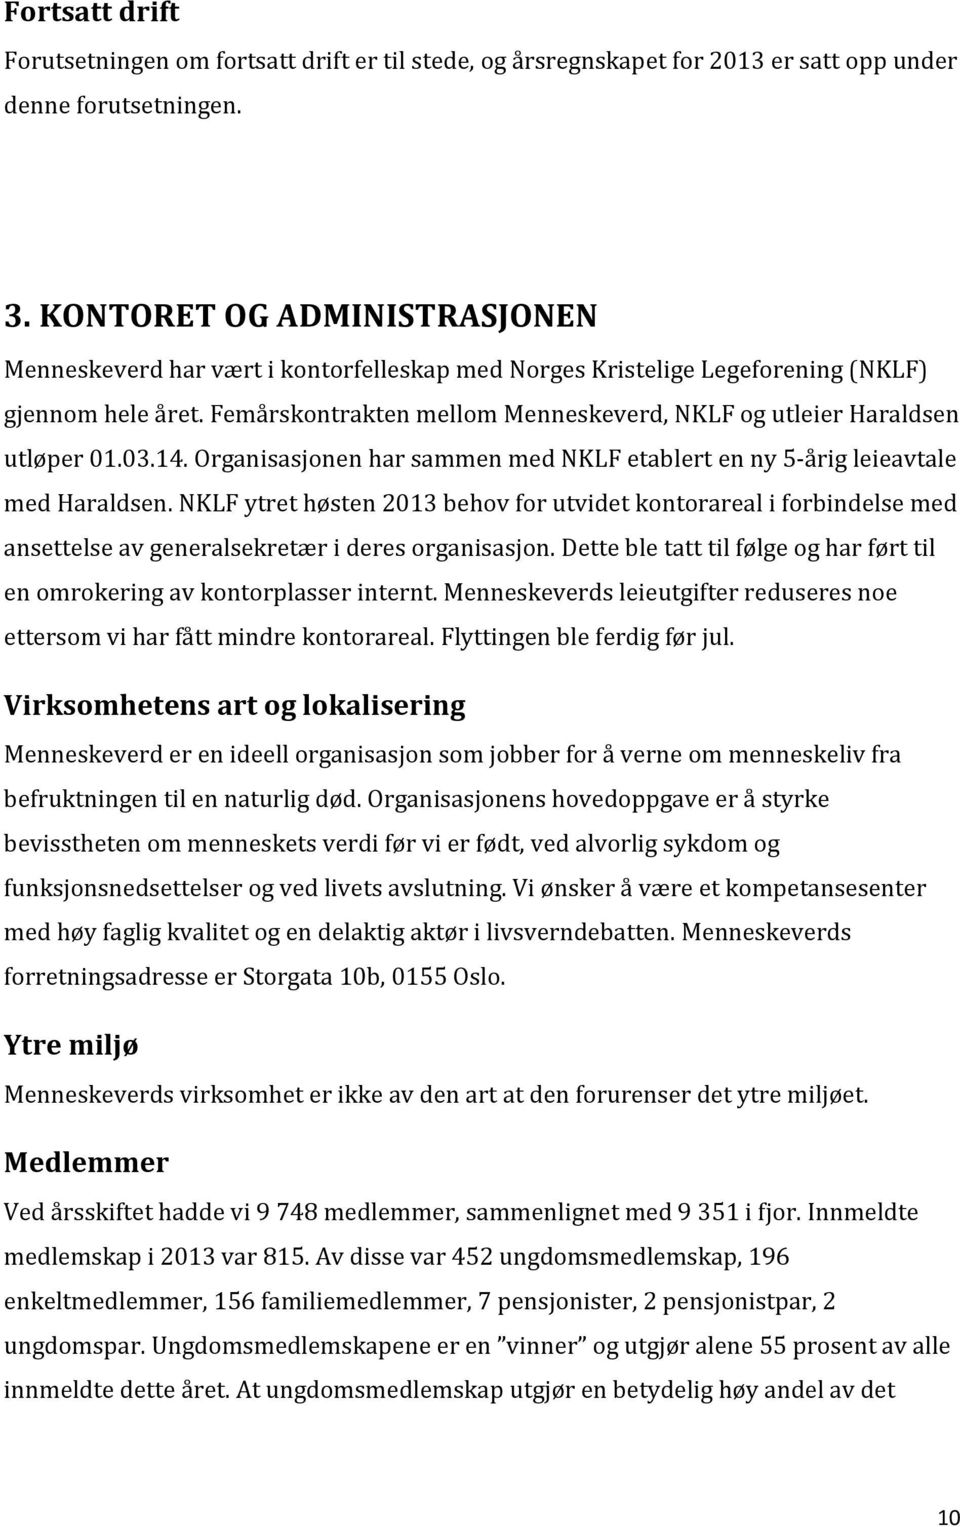 Femårskontrakten mellom Menneskeverd, NKLF og utleier Haraldsen utløper 01.03.14. Organisasjonen har sammen med NKLF etablert en ny 5-årig leieavtale med Haraldsen.